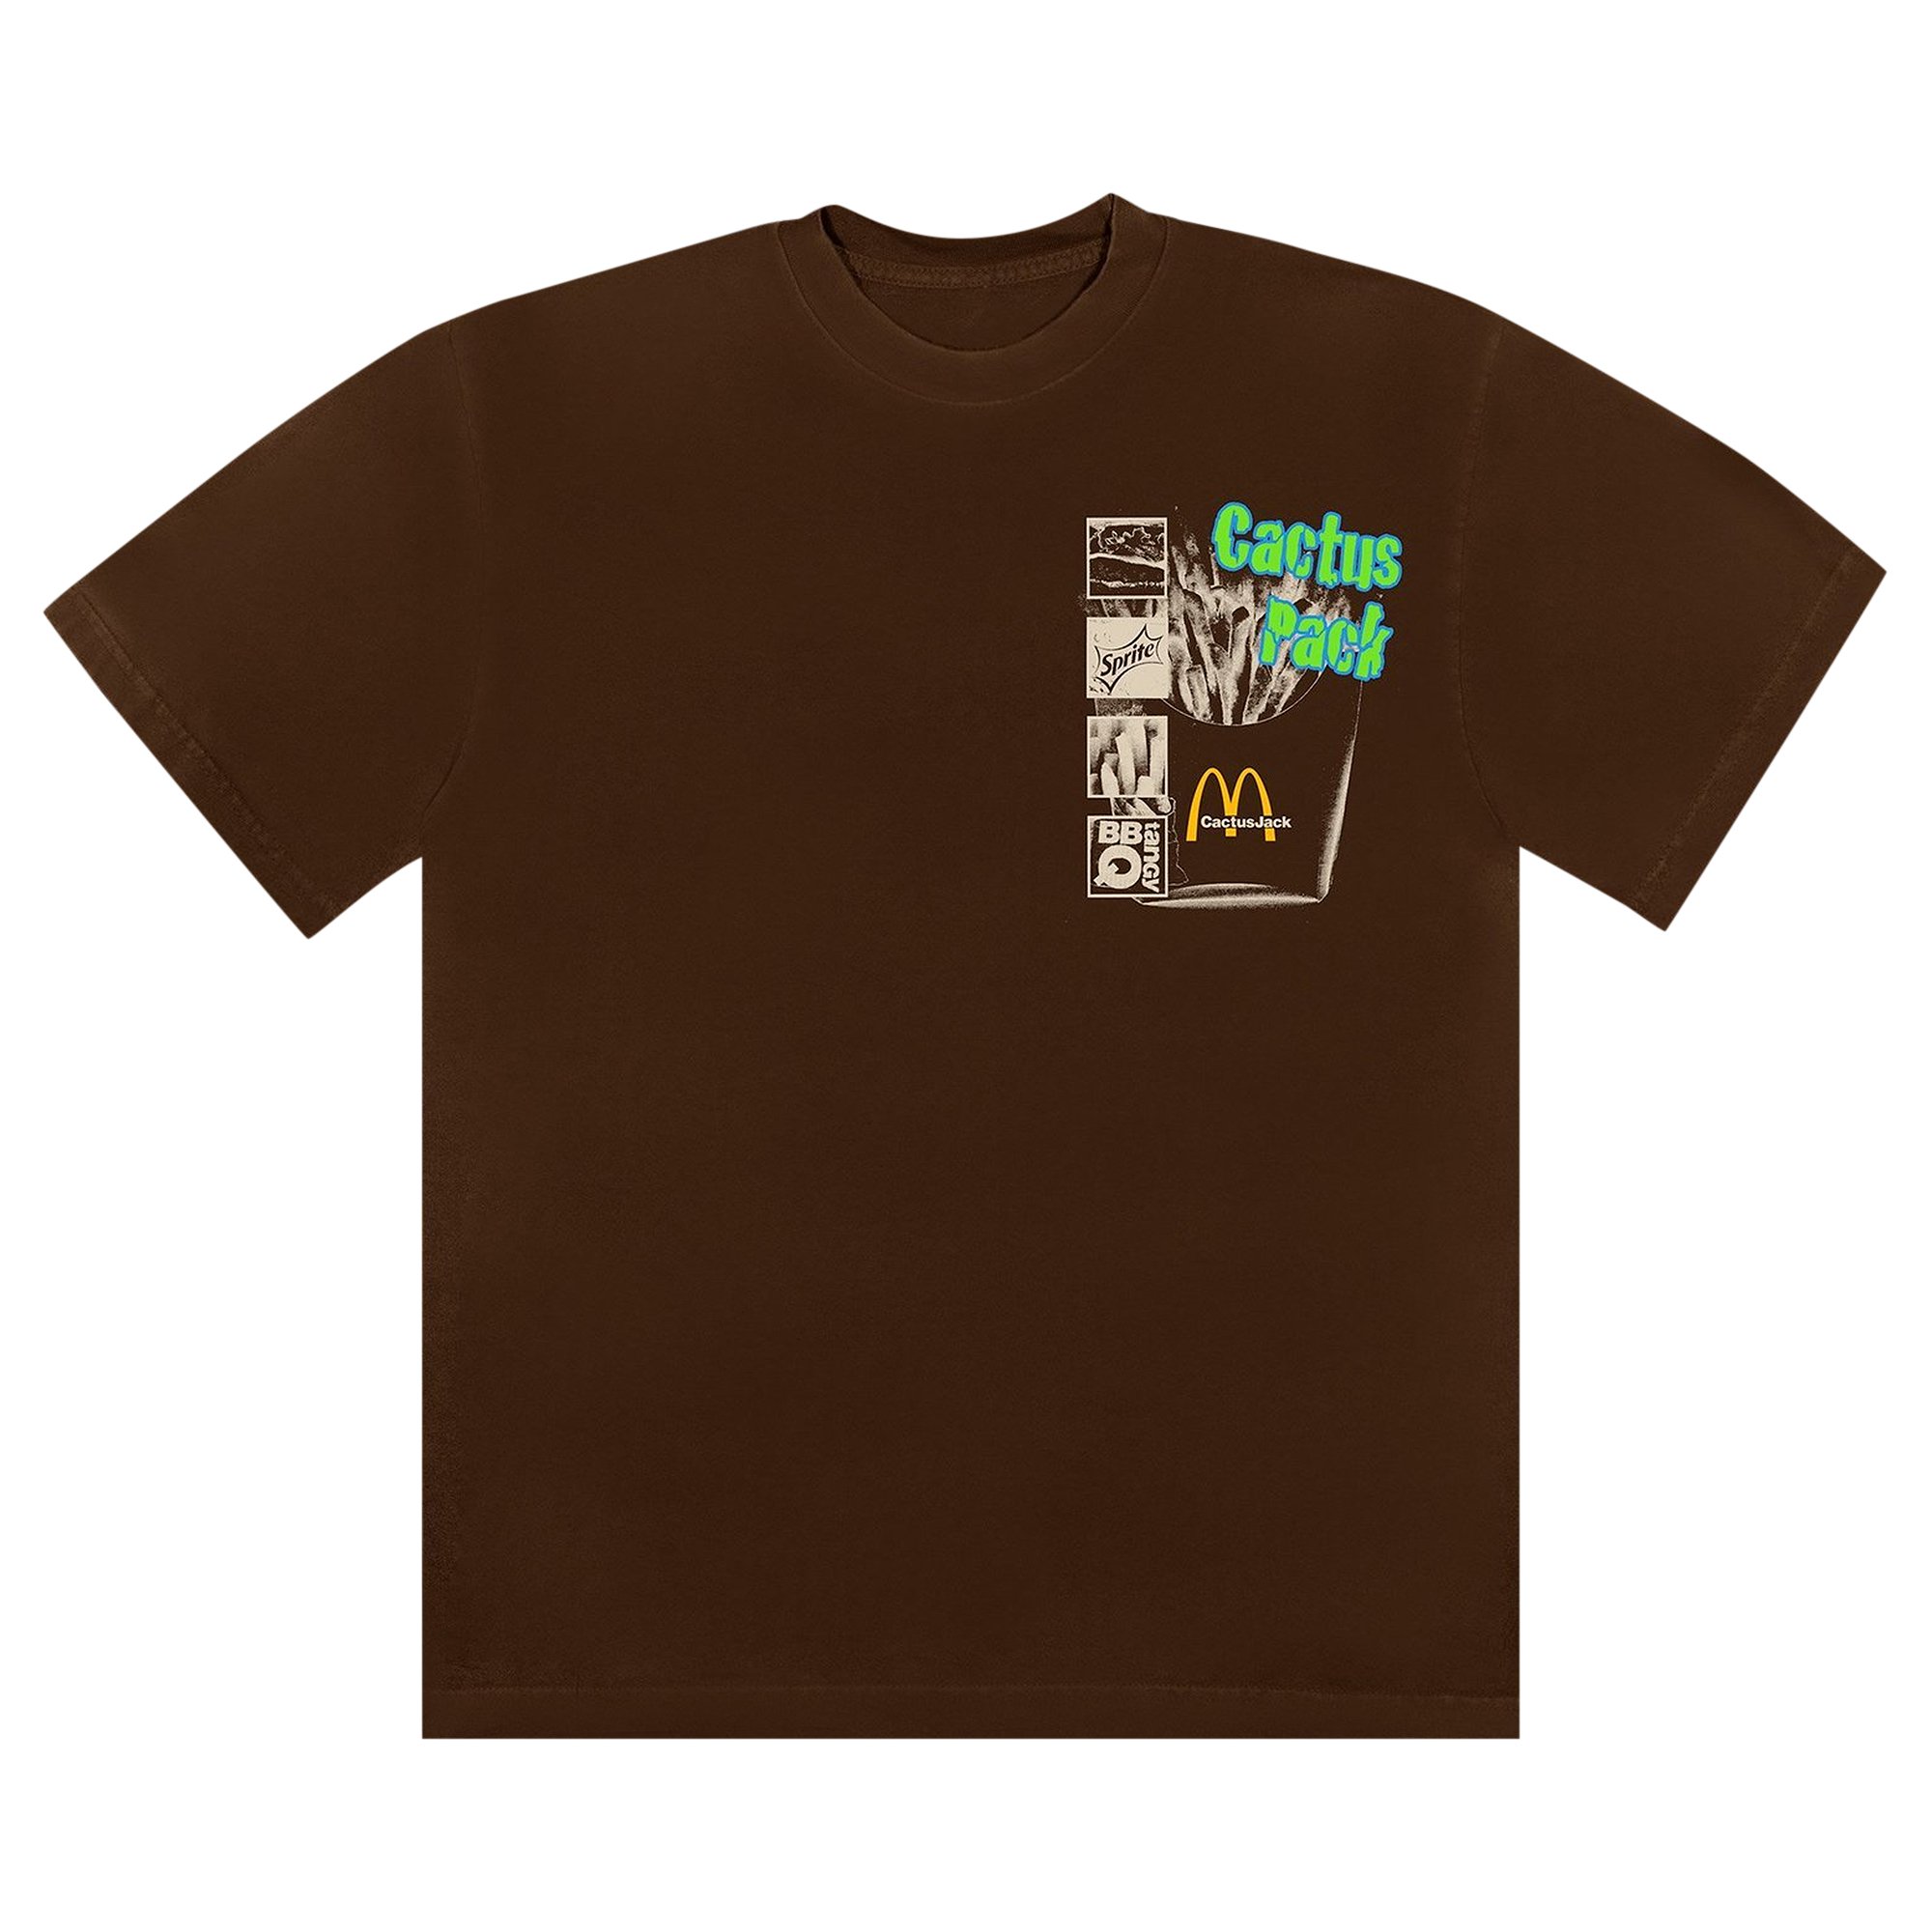 Cactus Jack by Travis Scott x McDonald's Cactus Pack Vintage Promo T-Shirt  'Brown'